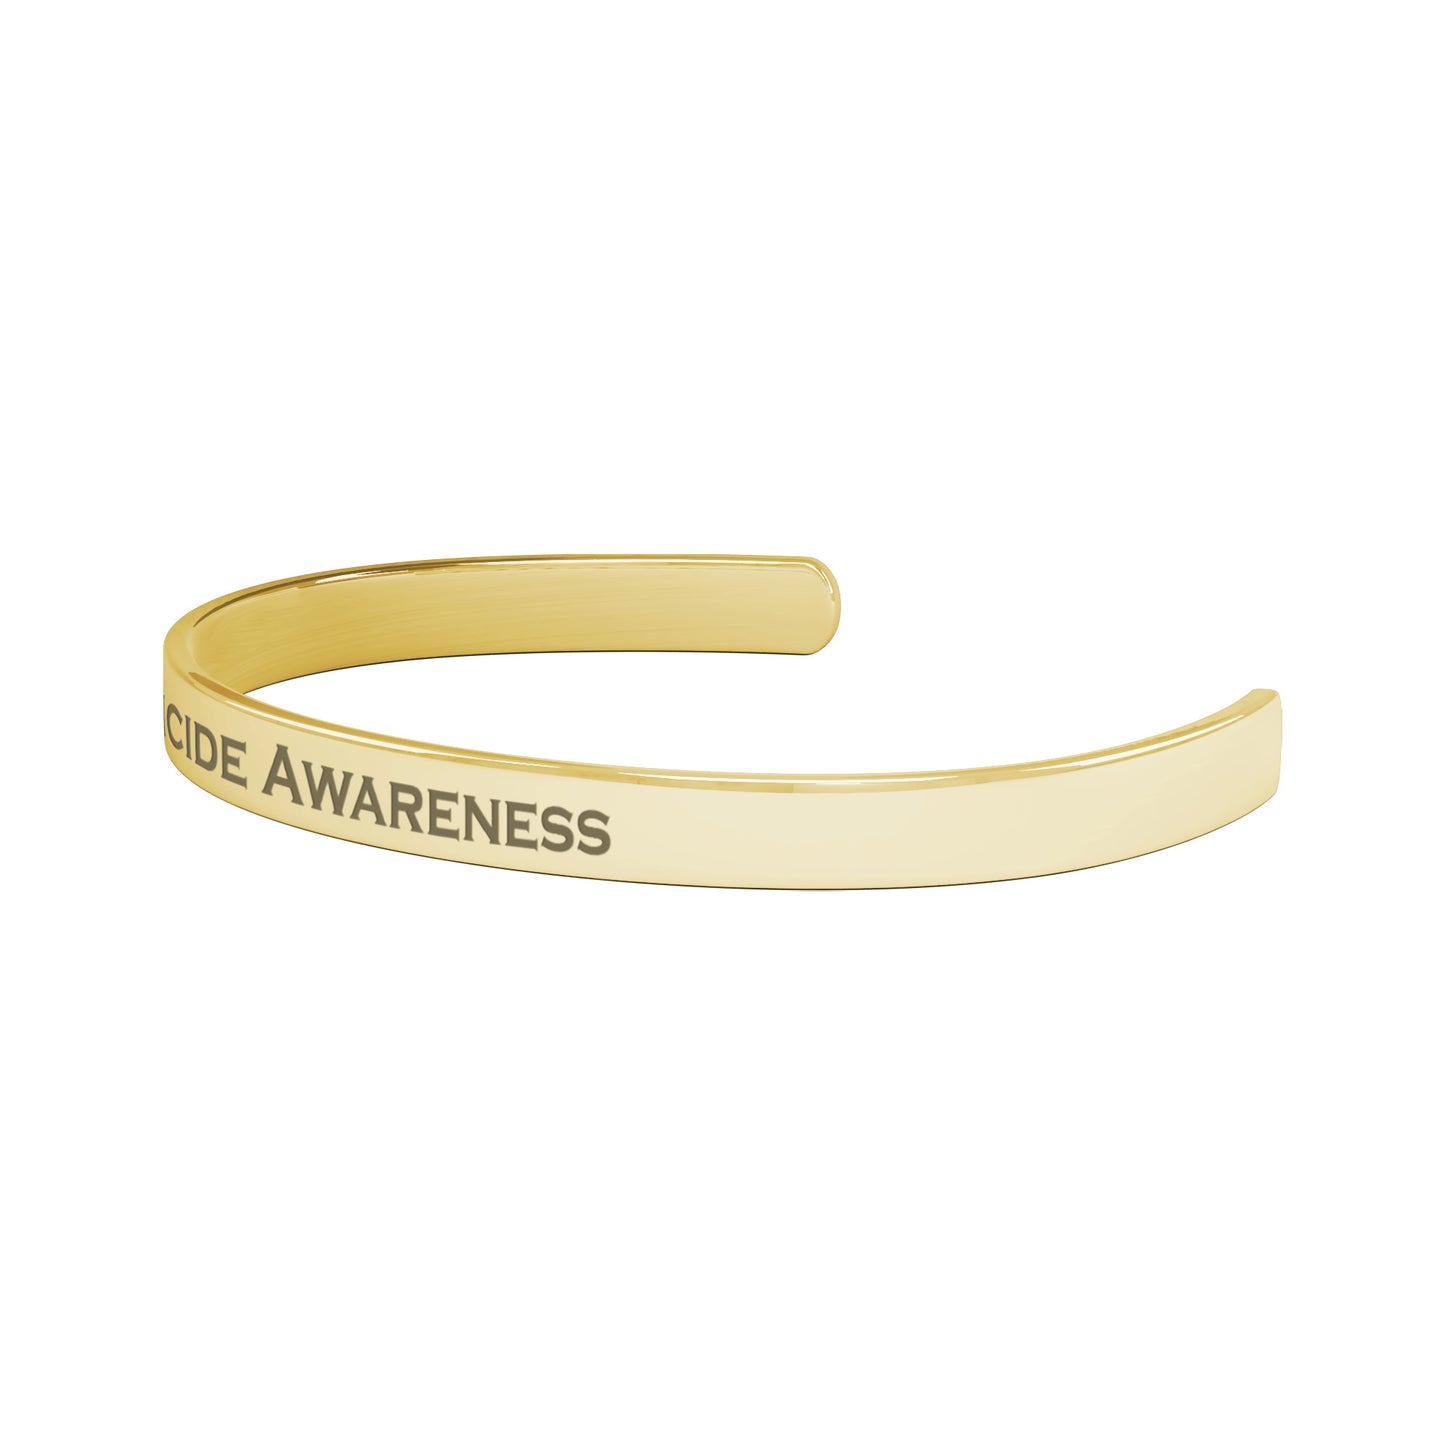 Personalized Suicide Awareness Cuff Bracelet